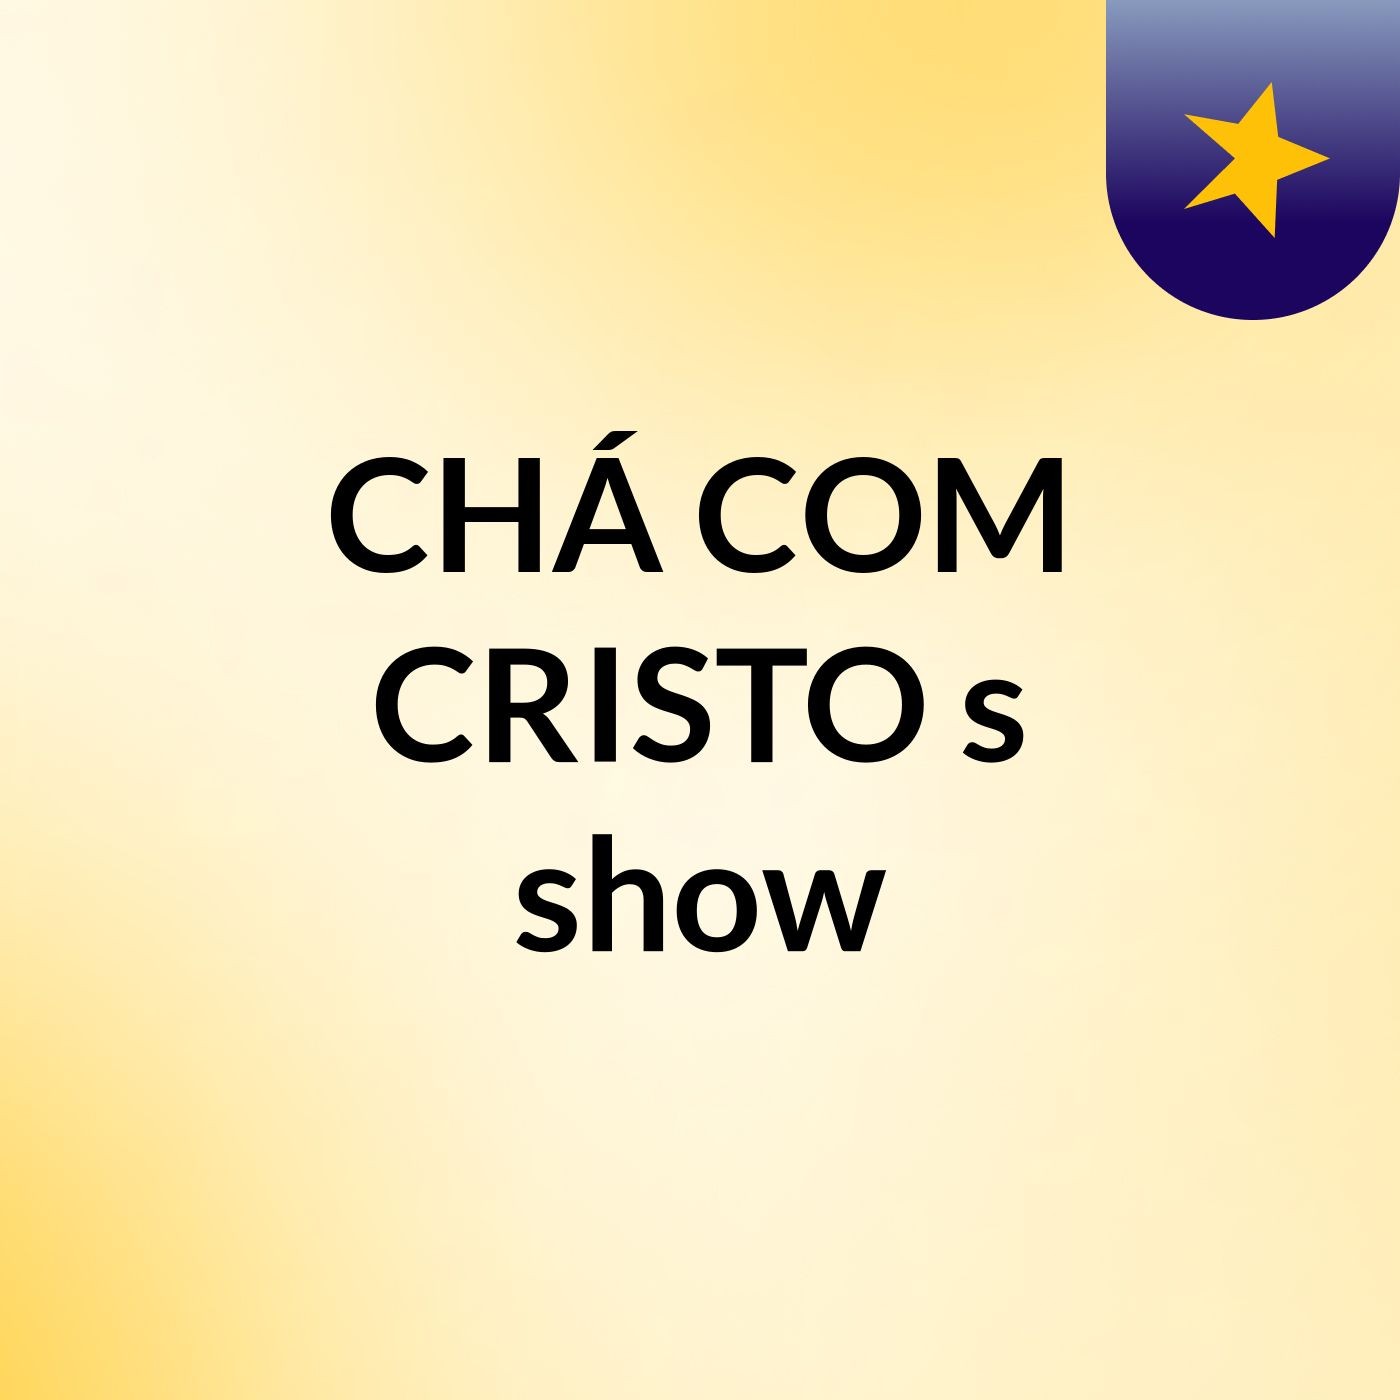 CHÁ COM CRISTO's show